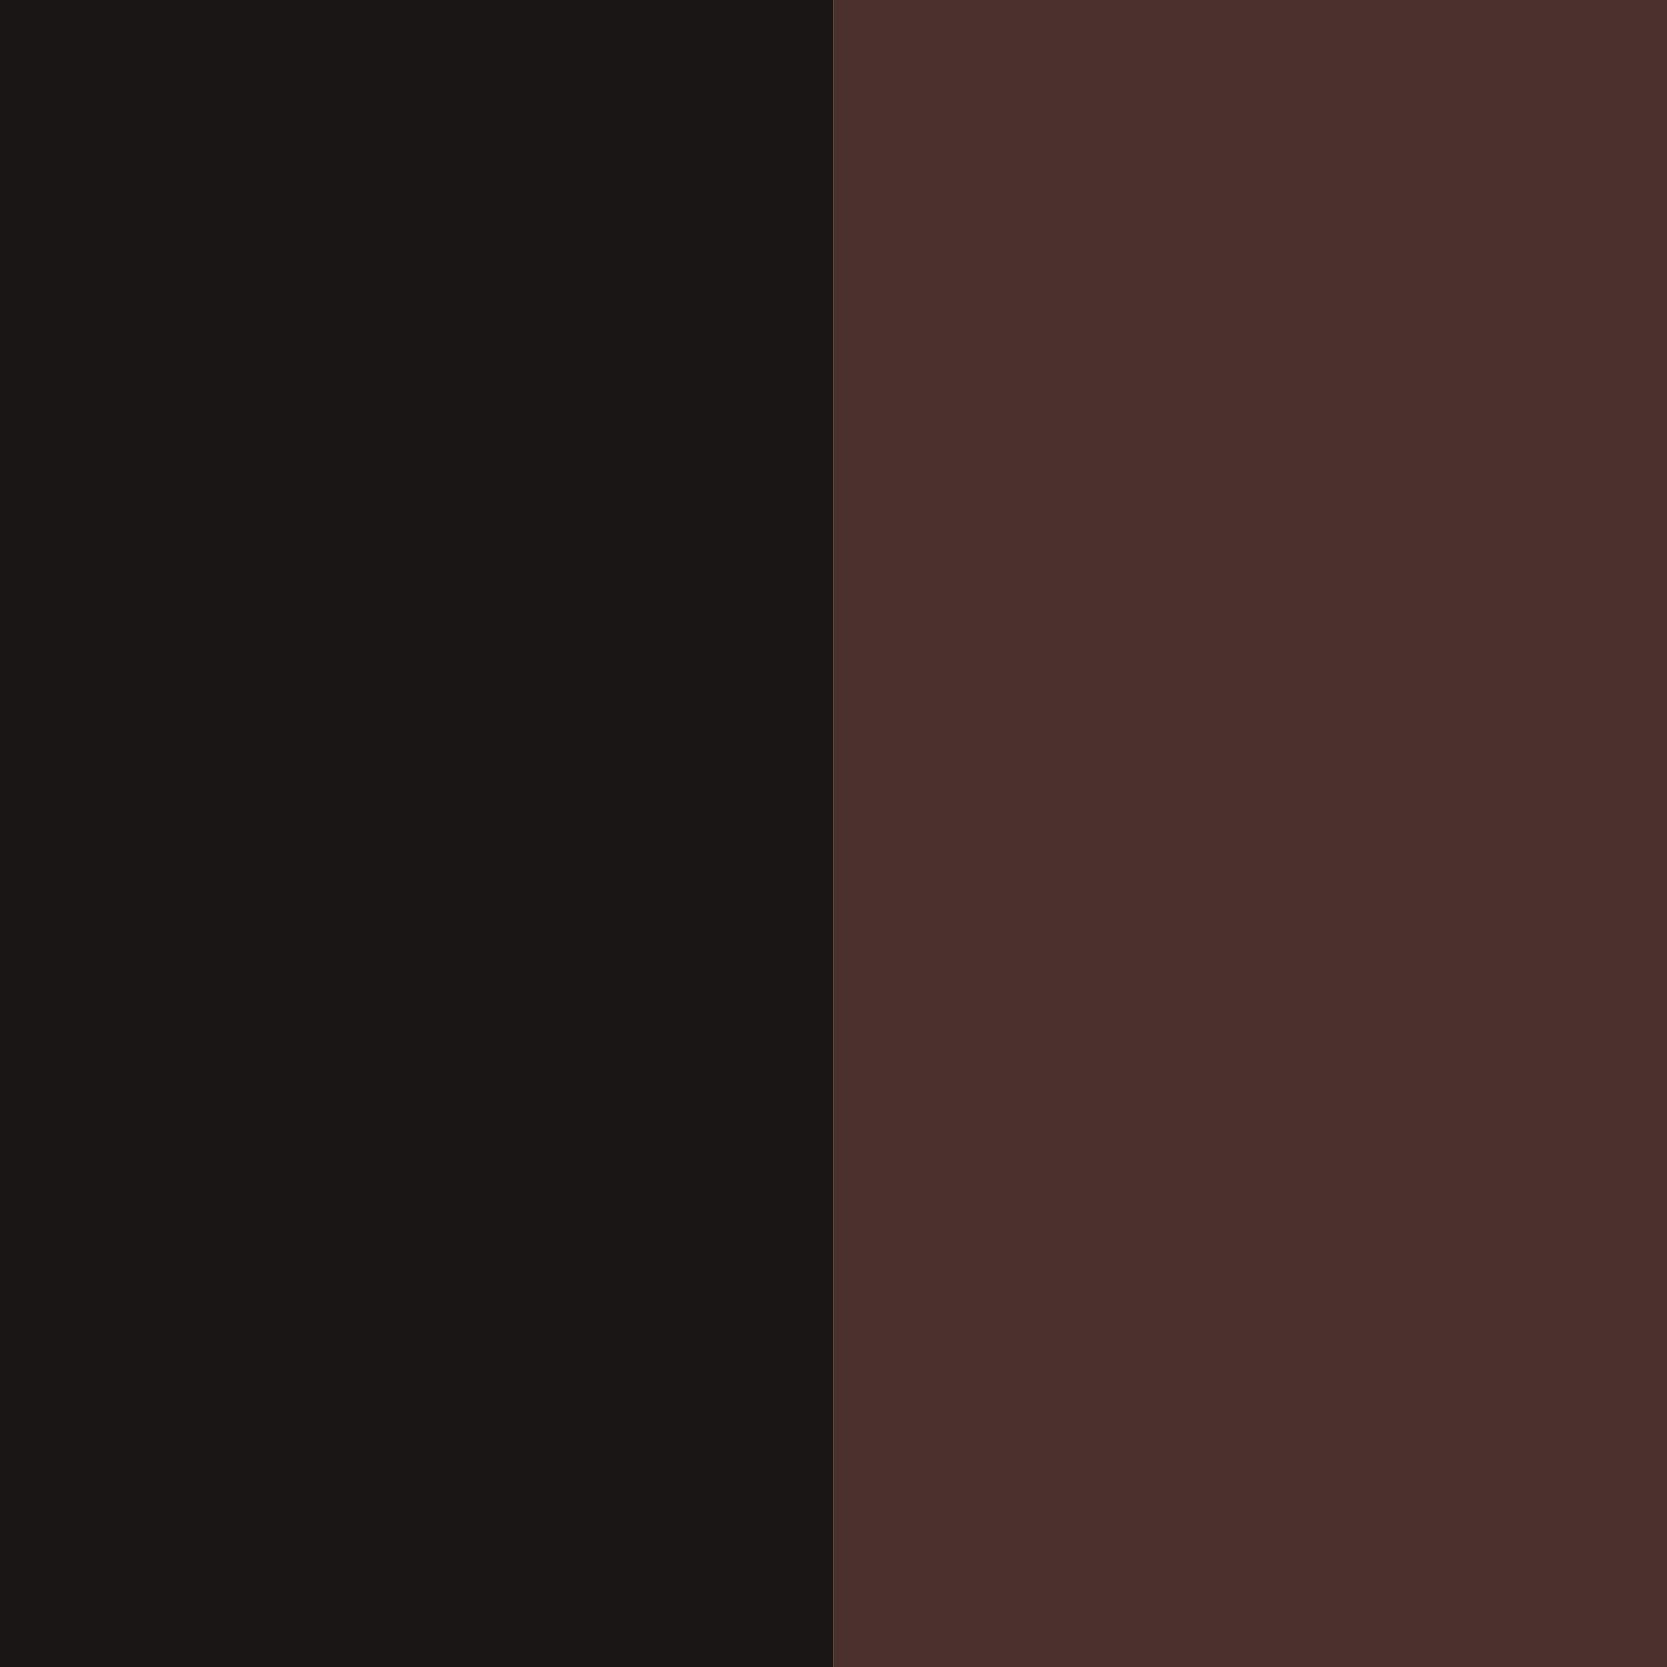 Black-Brown